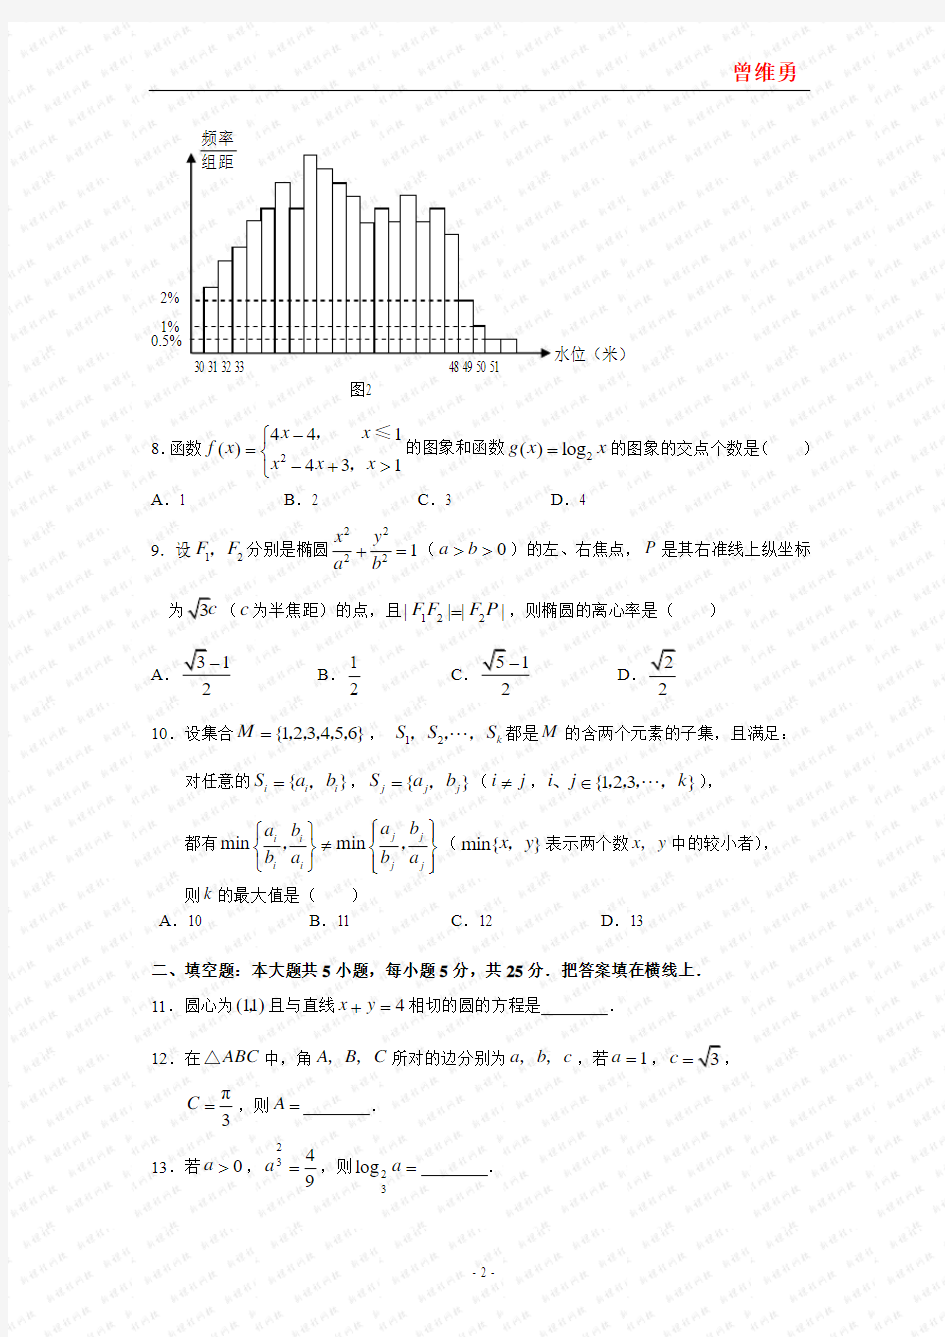 2007年高考文科数学试题及参考答案(湖南卷)